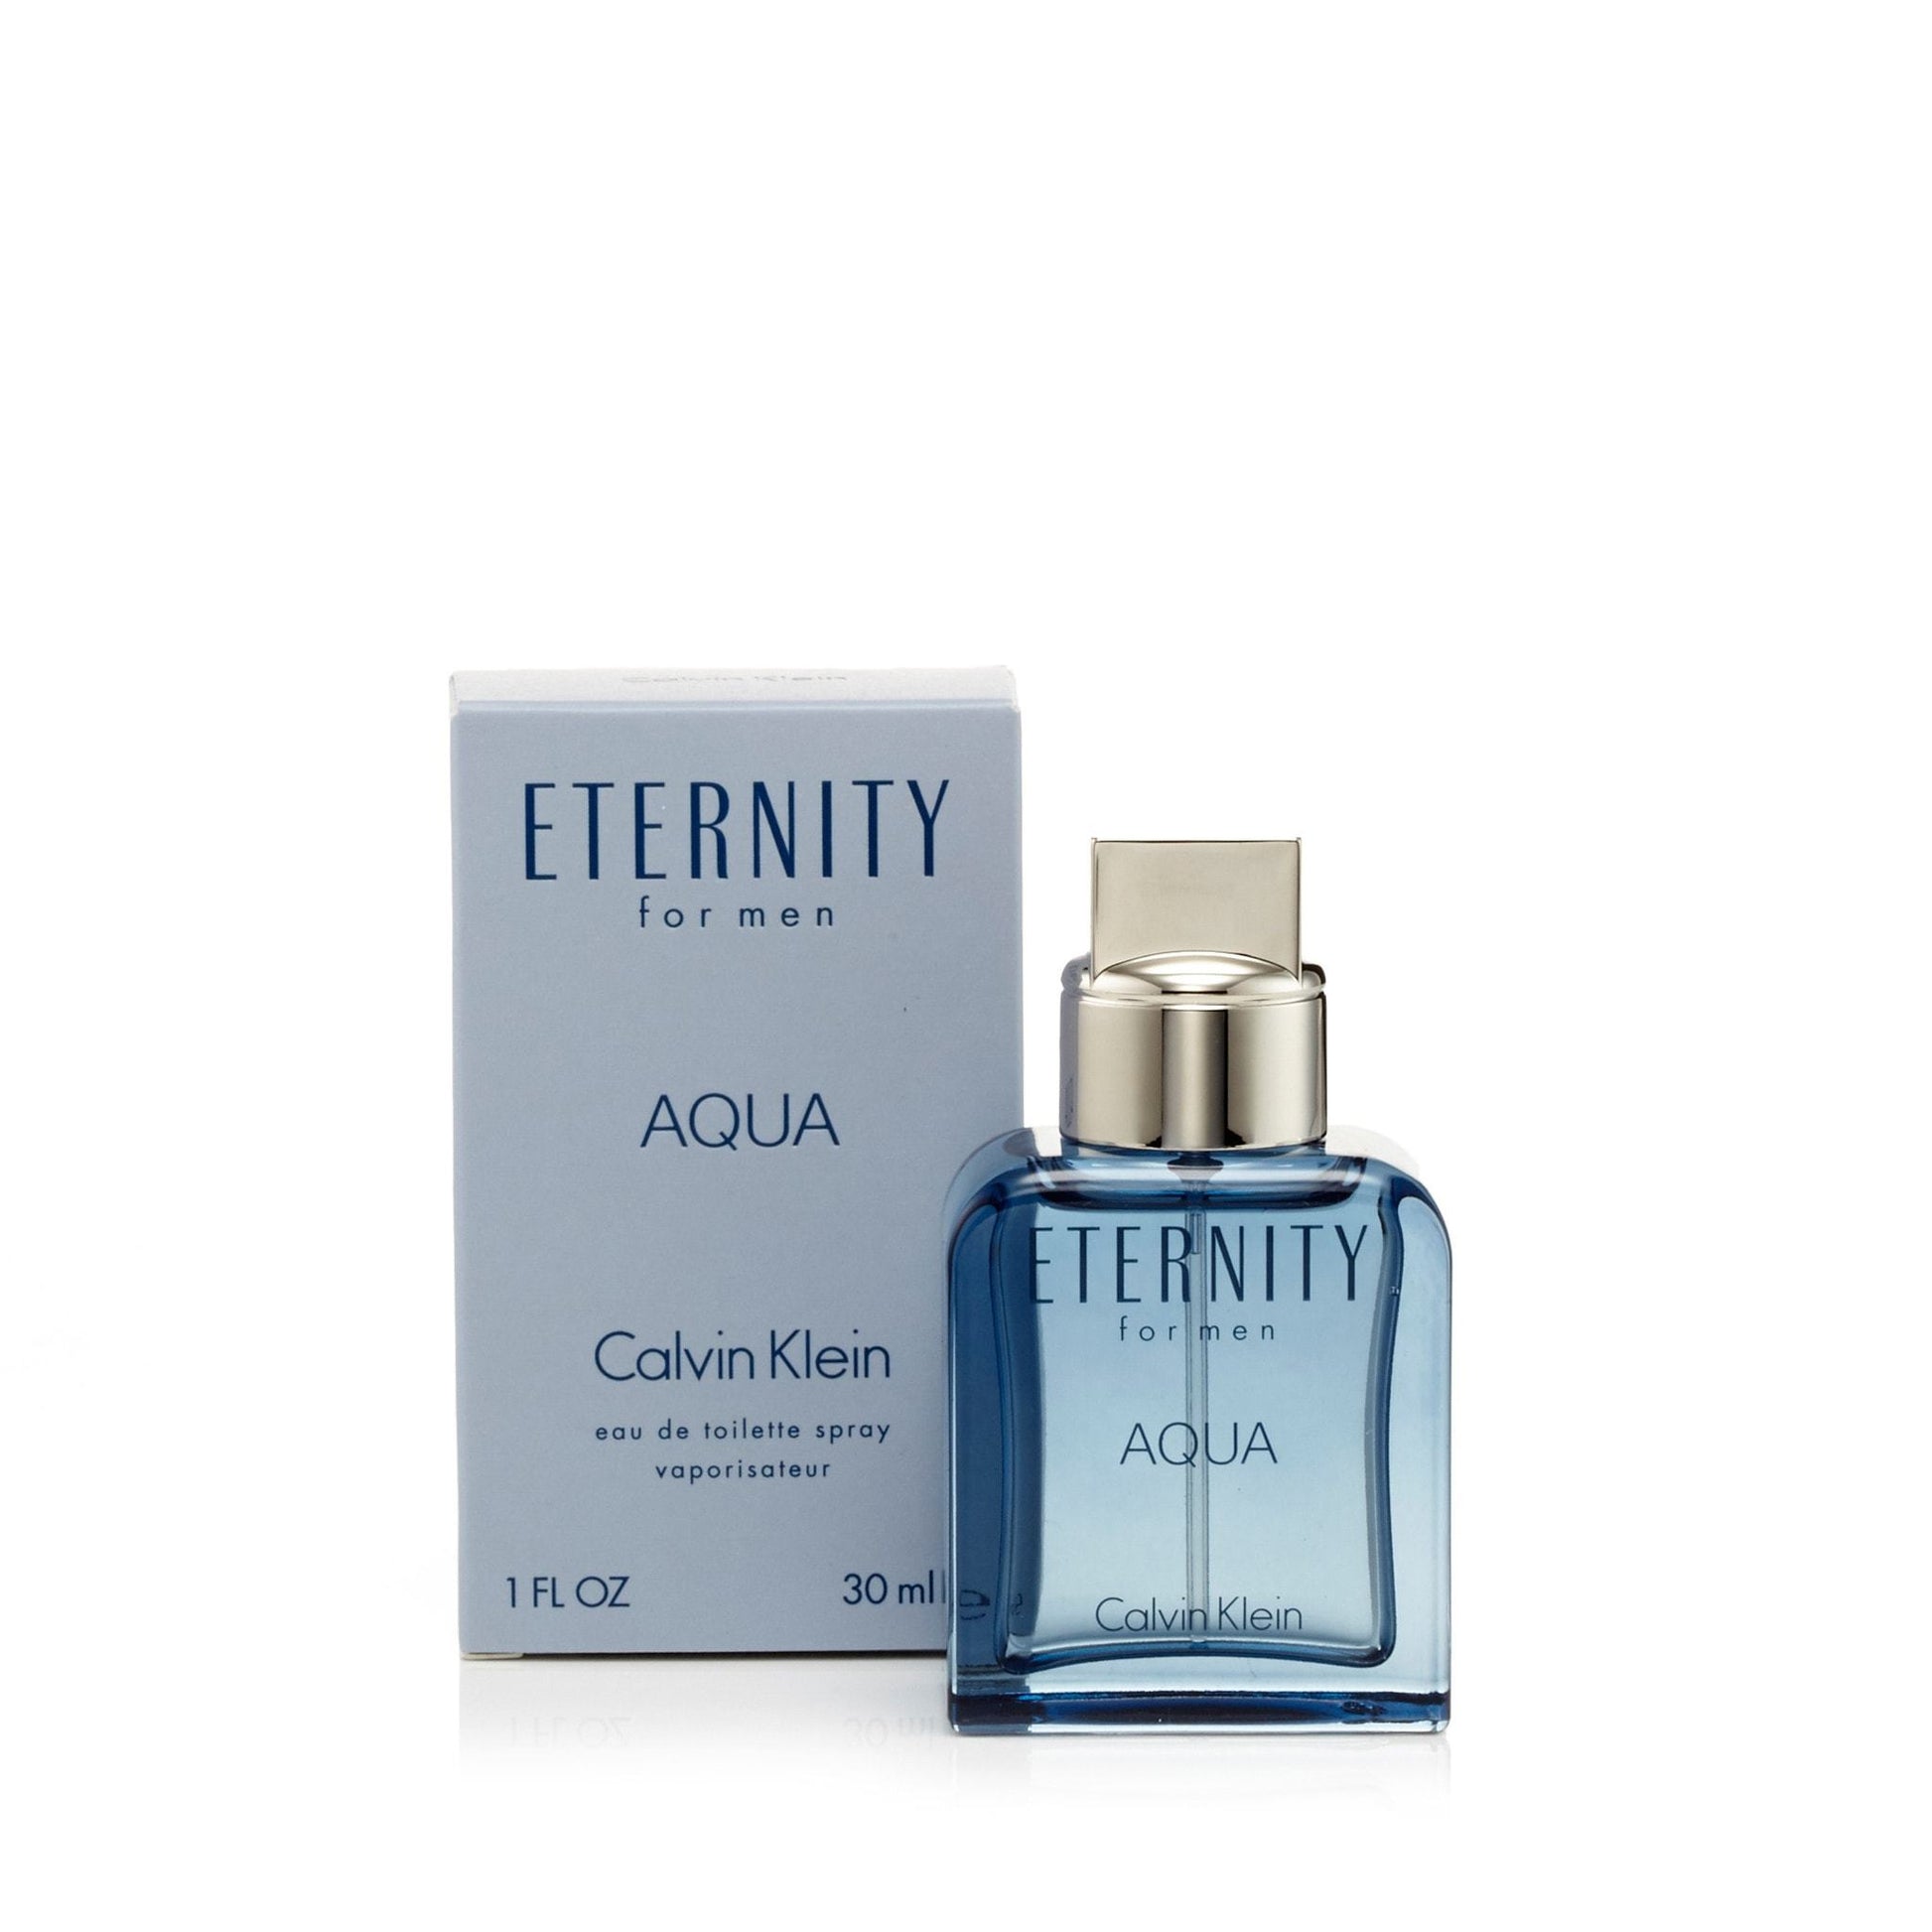 Eternity Aqua Eau de Toilette Spray for Men by Calvin Klein, Product image 6